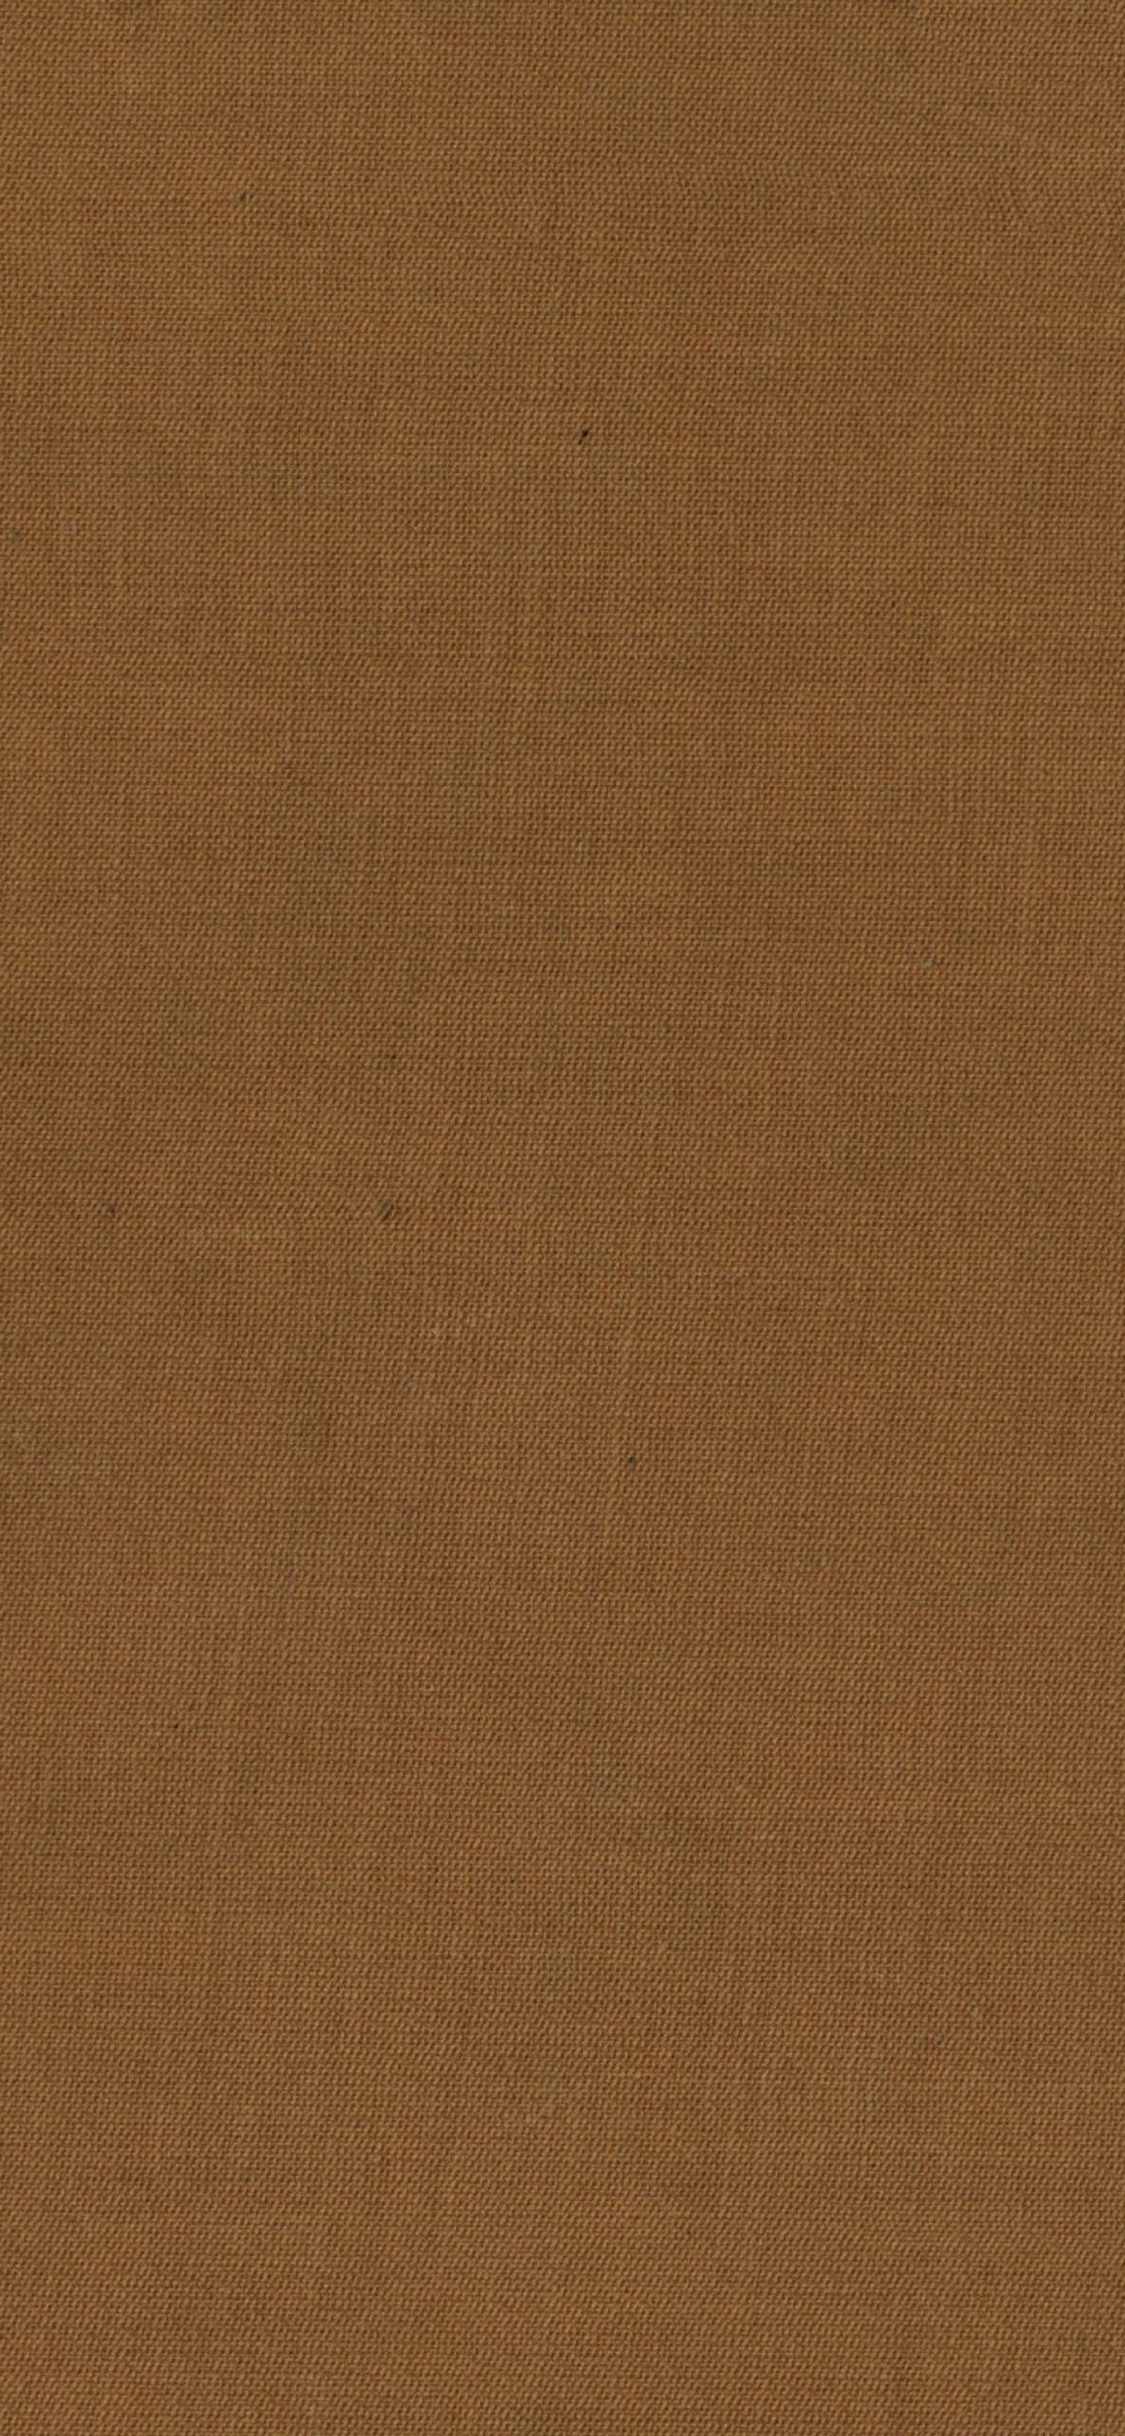 wallpaper coklat,brown,beige,wood,flooring,plywood